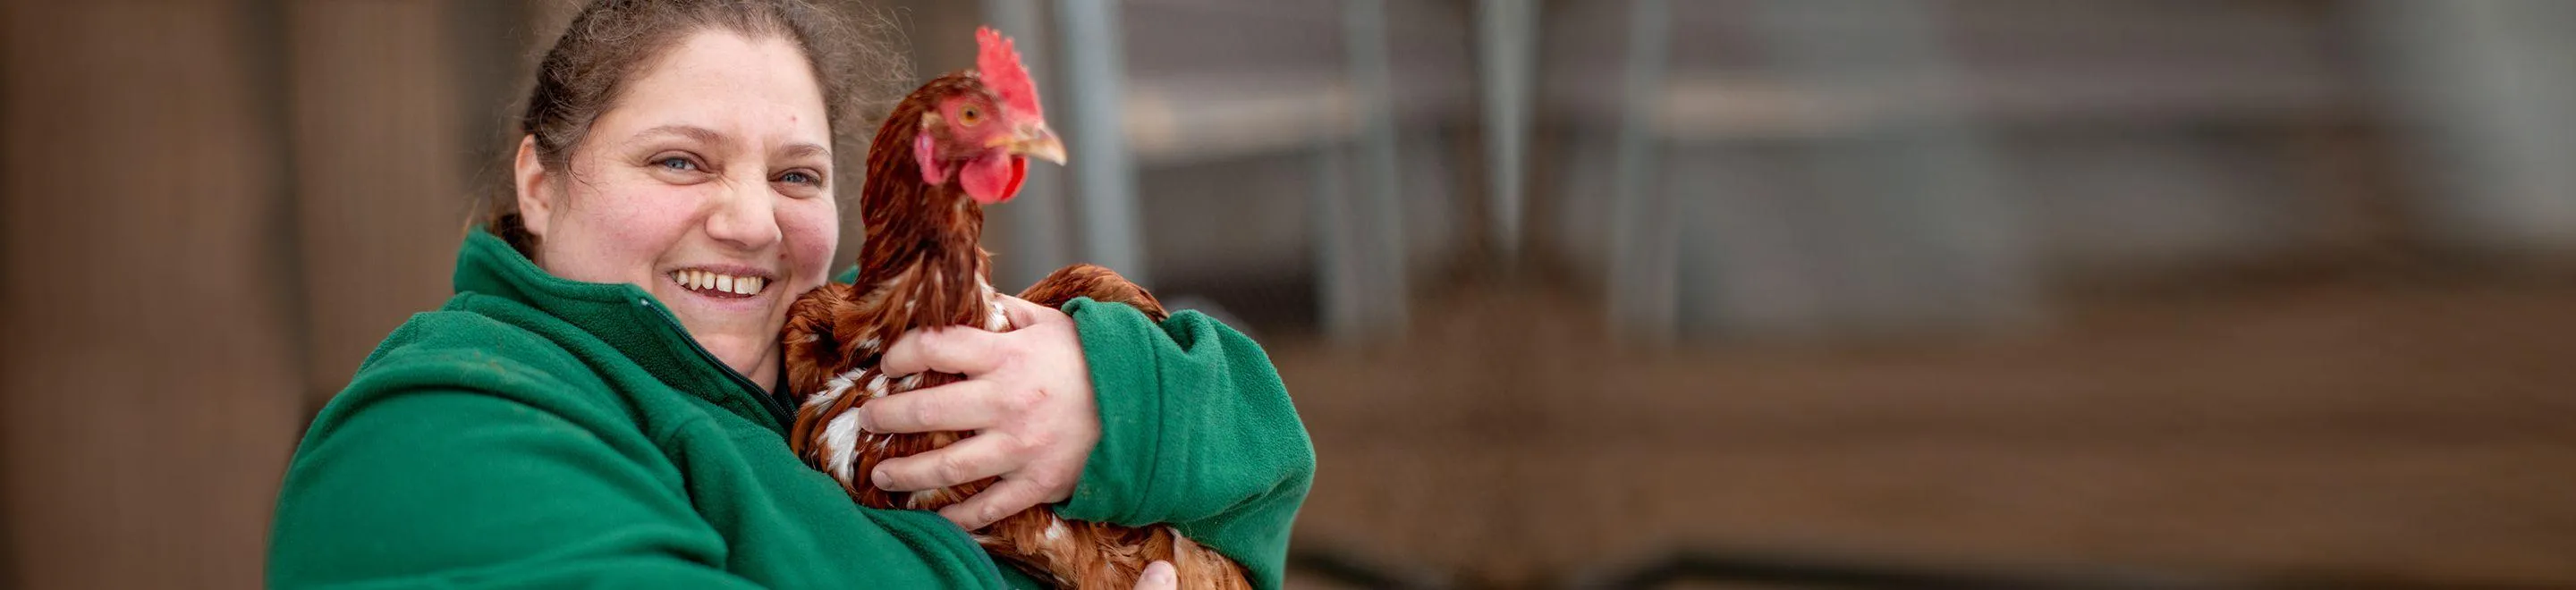 Eine lächelnde Frau hält ein Huhn im Arm.